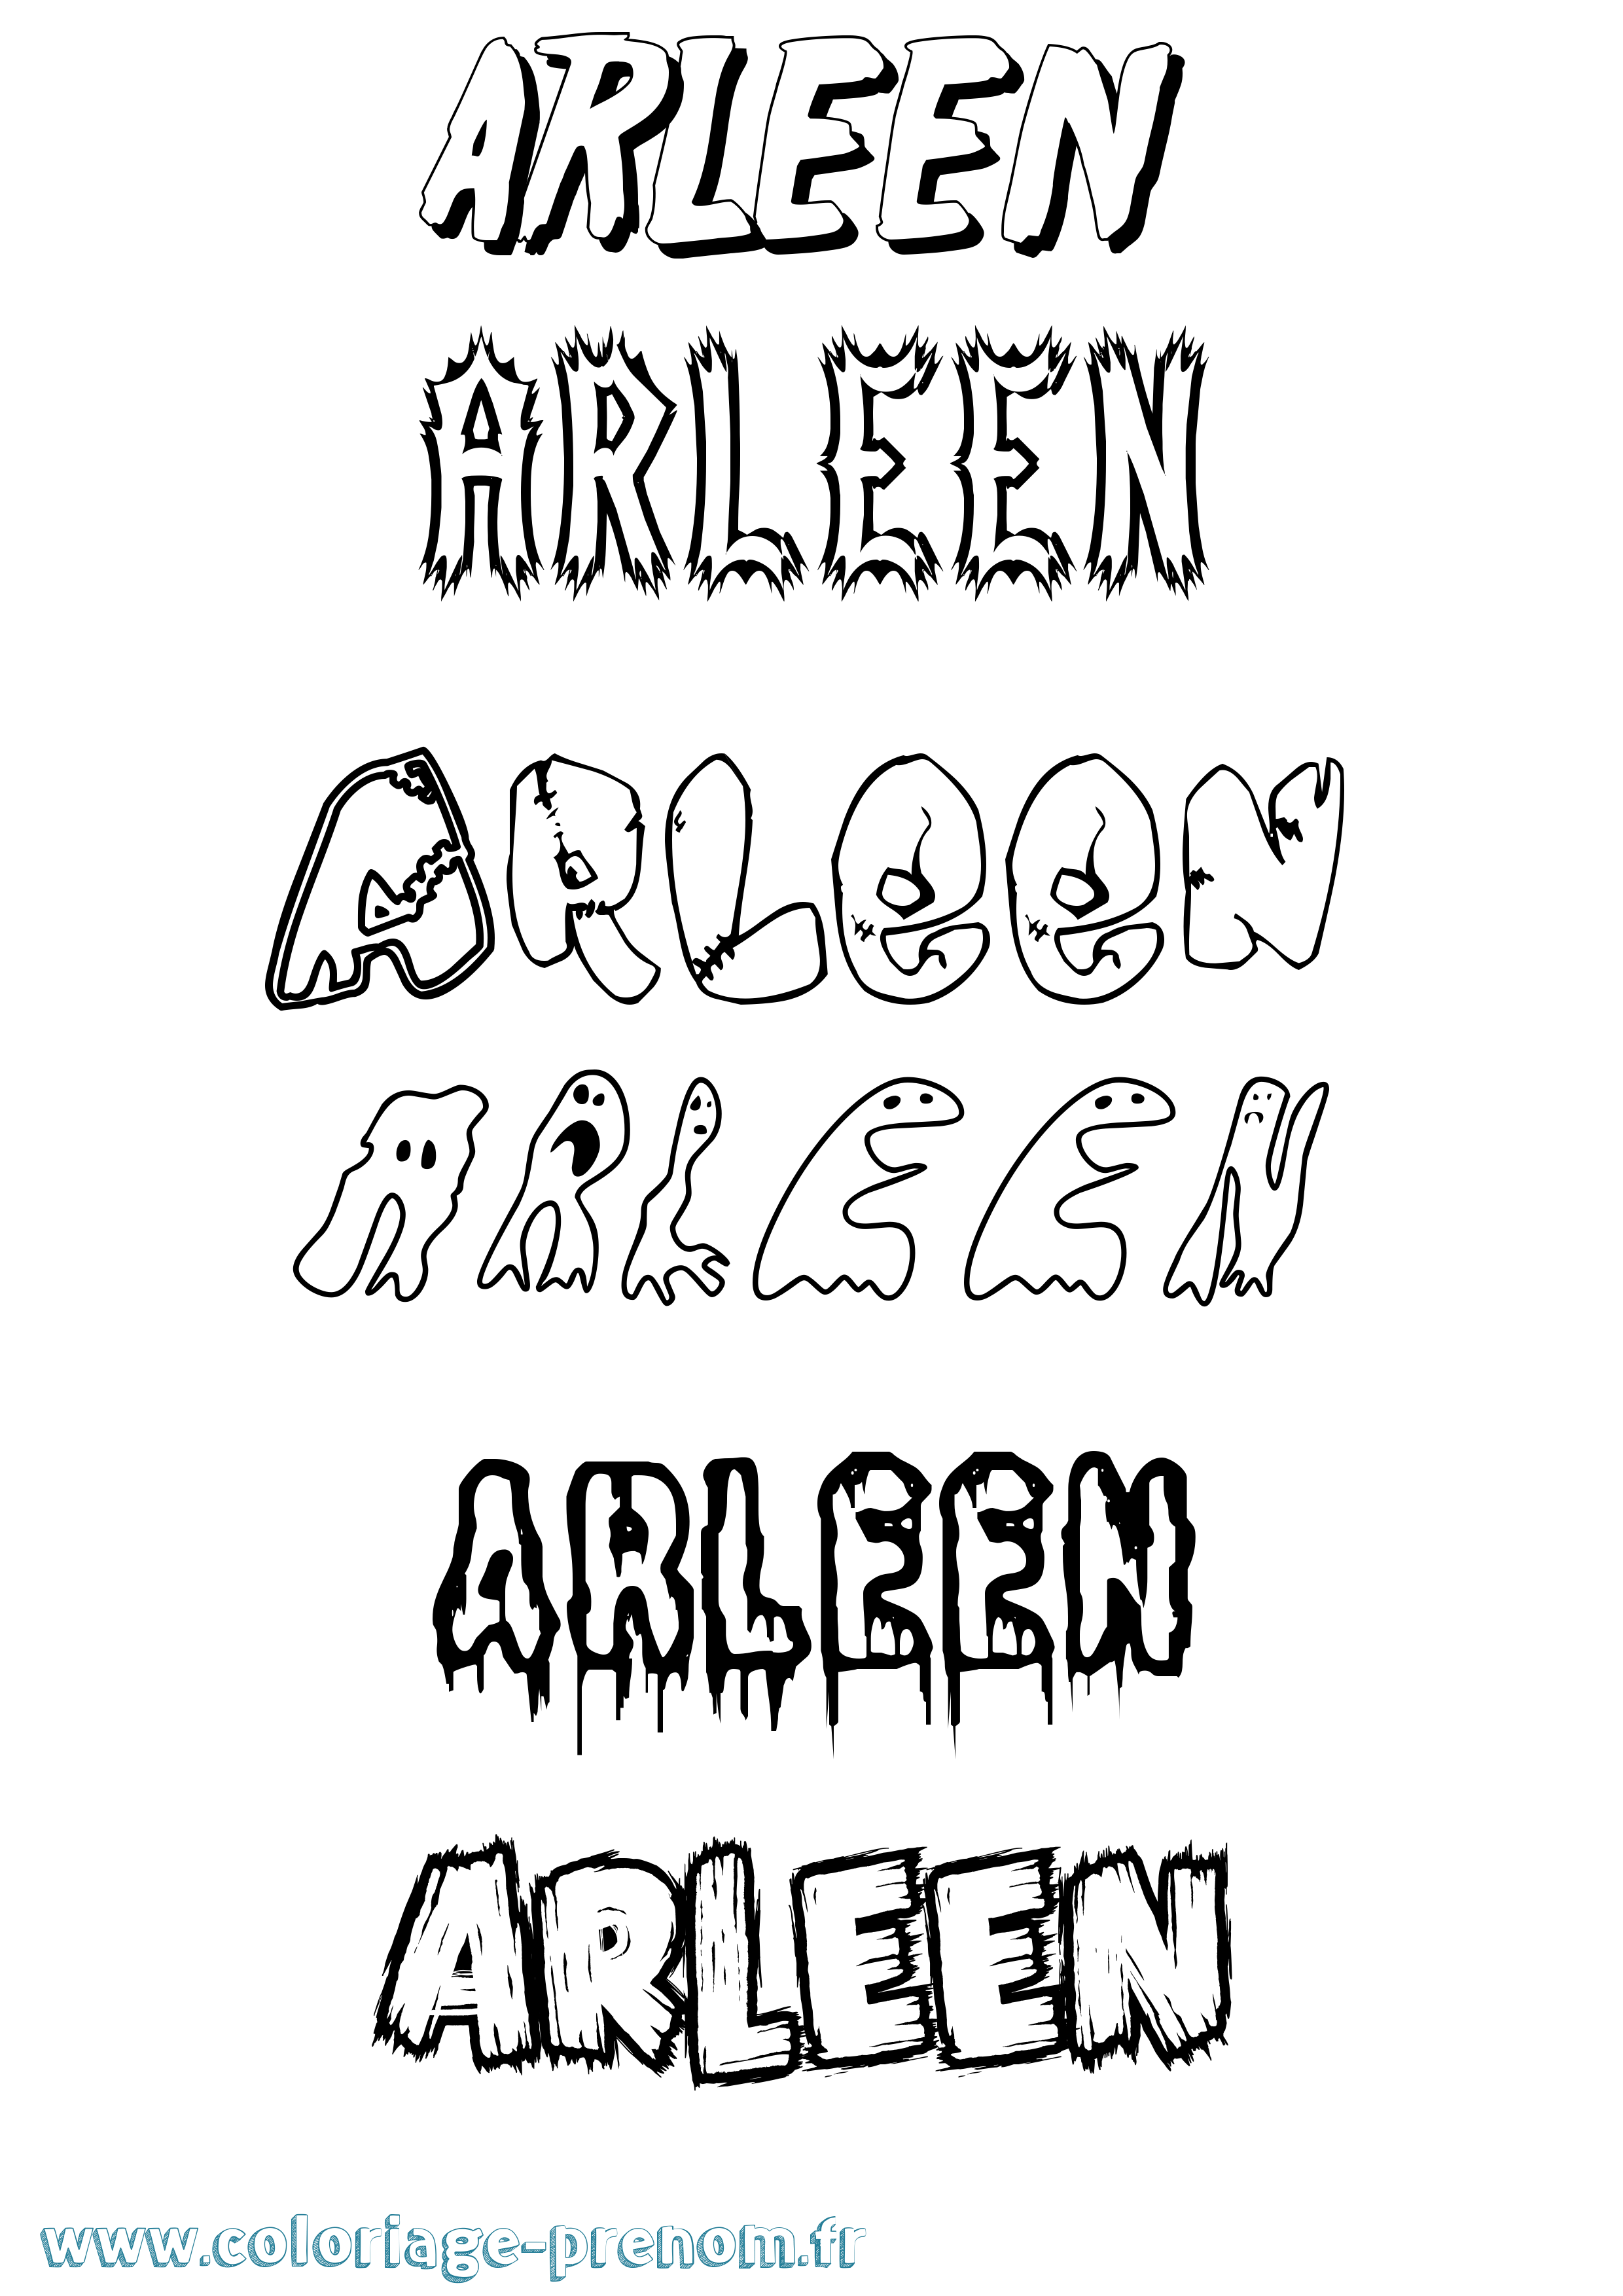 Coloriage prénom Arleen Frisson